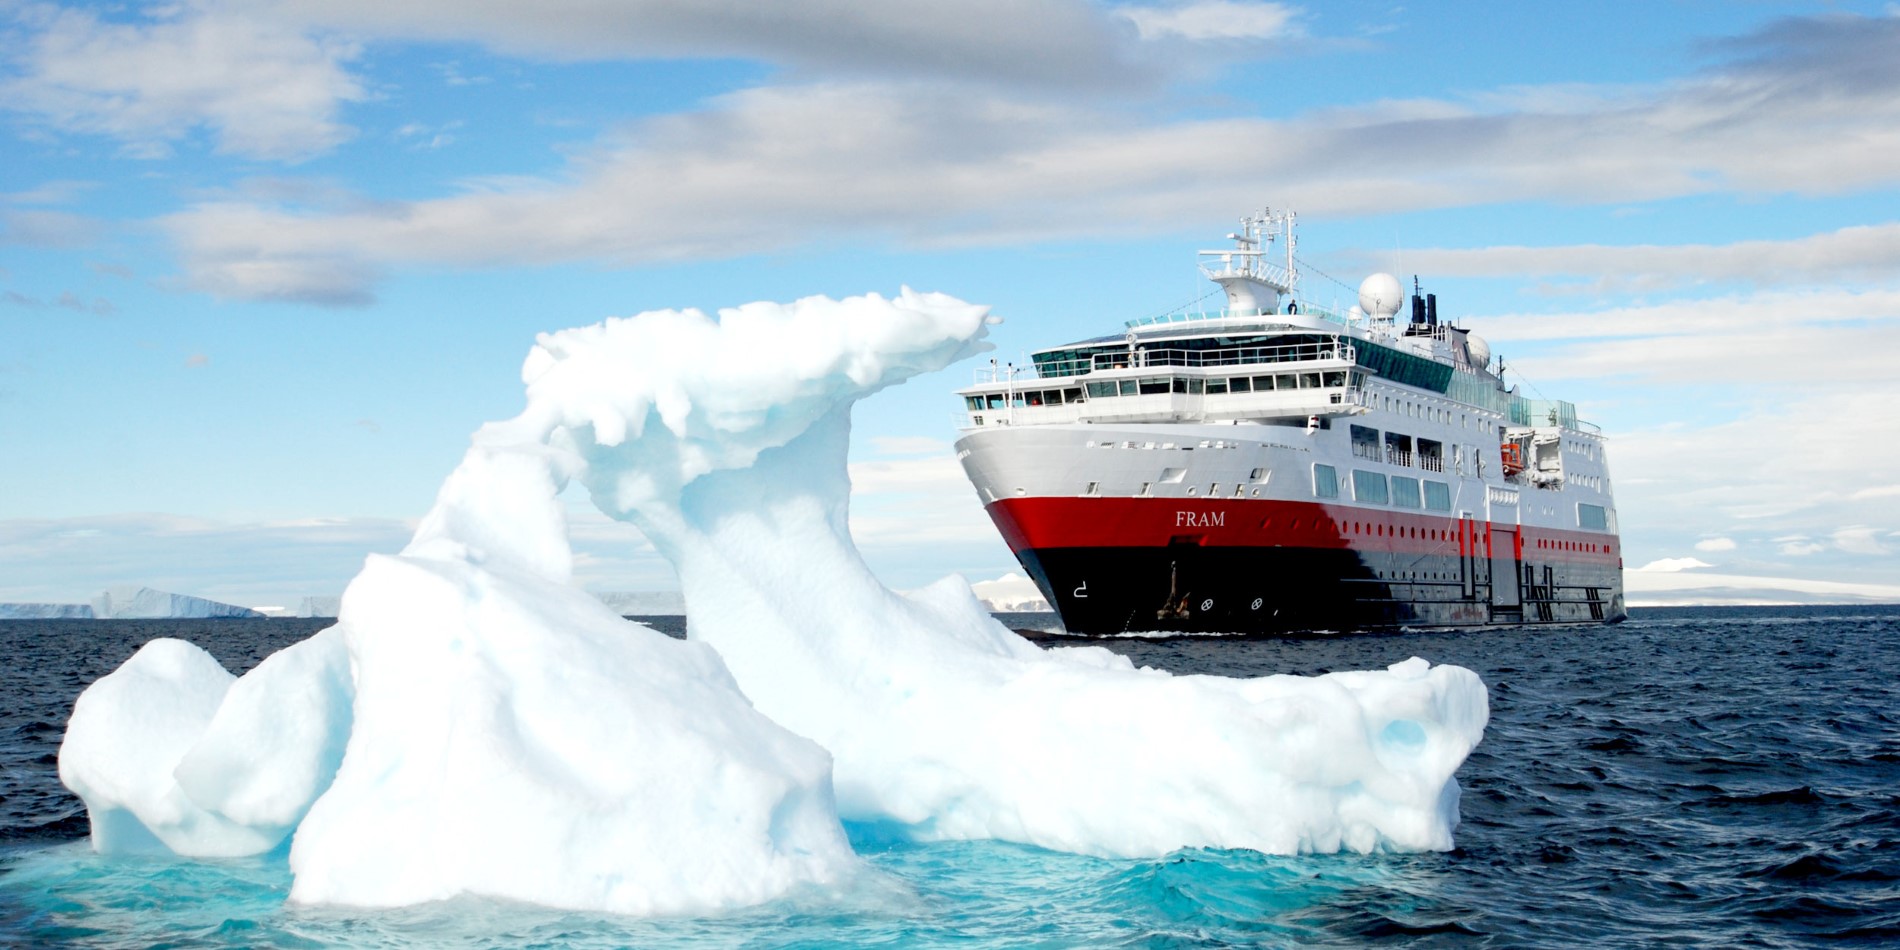 Icebergs - l'un des nombreux motifs photo préférés lors d'une expédition avec MS Fram